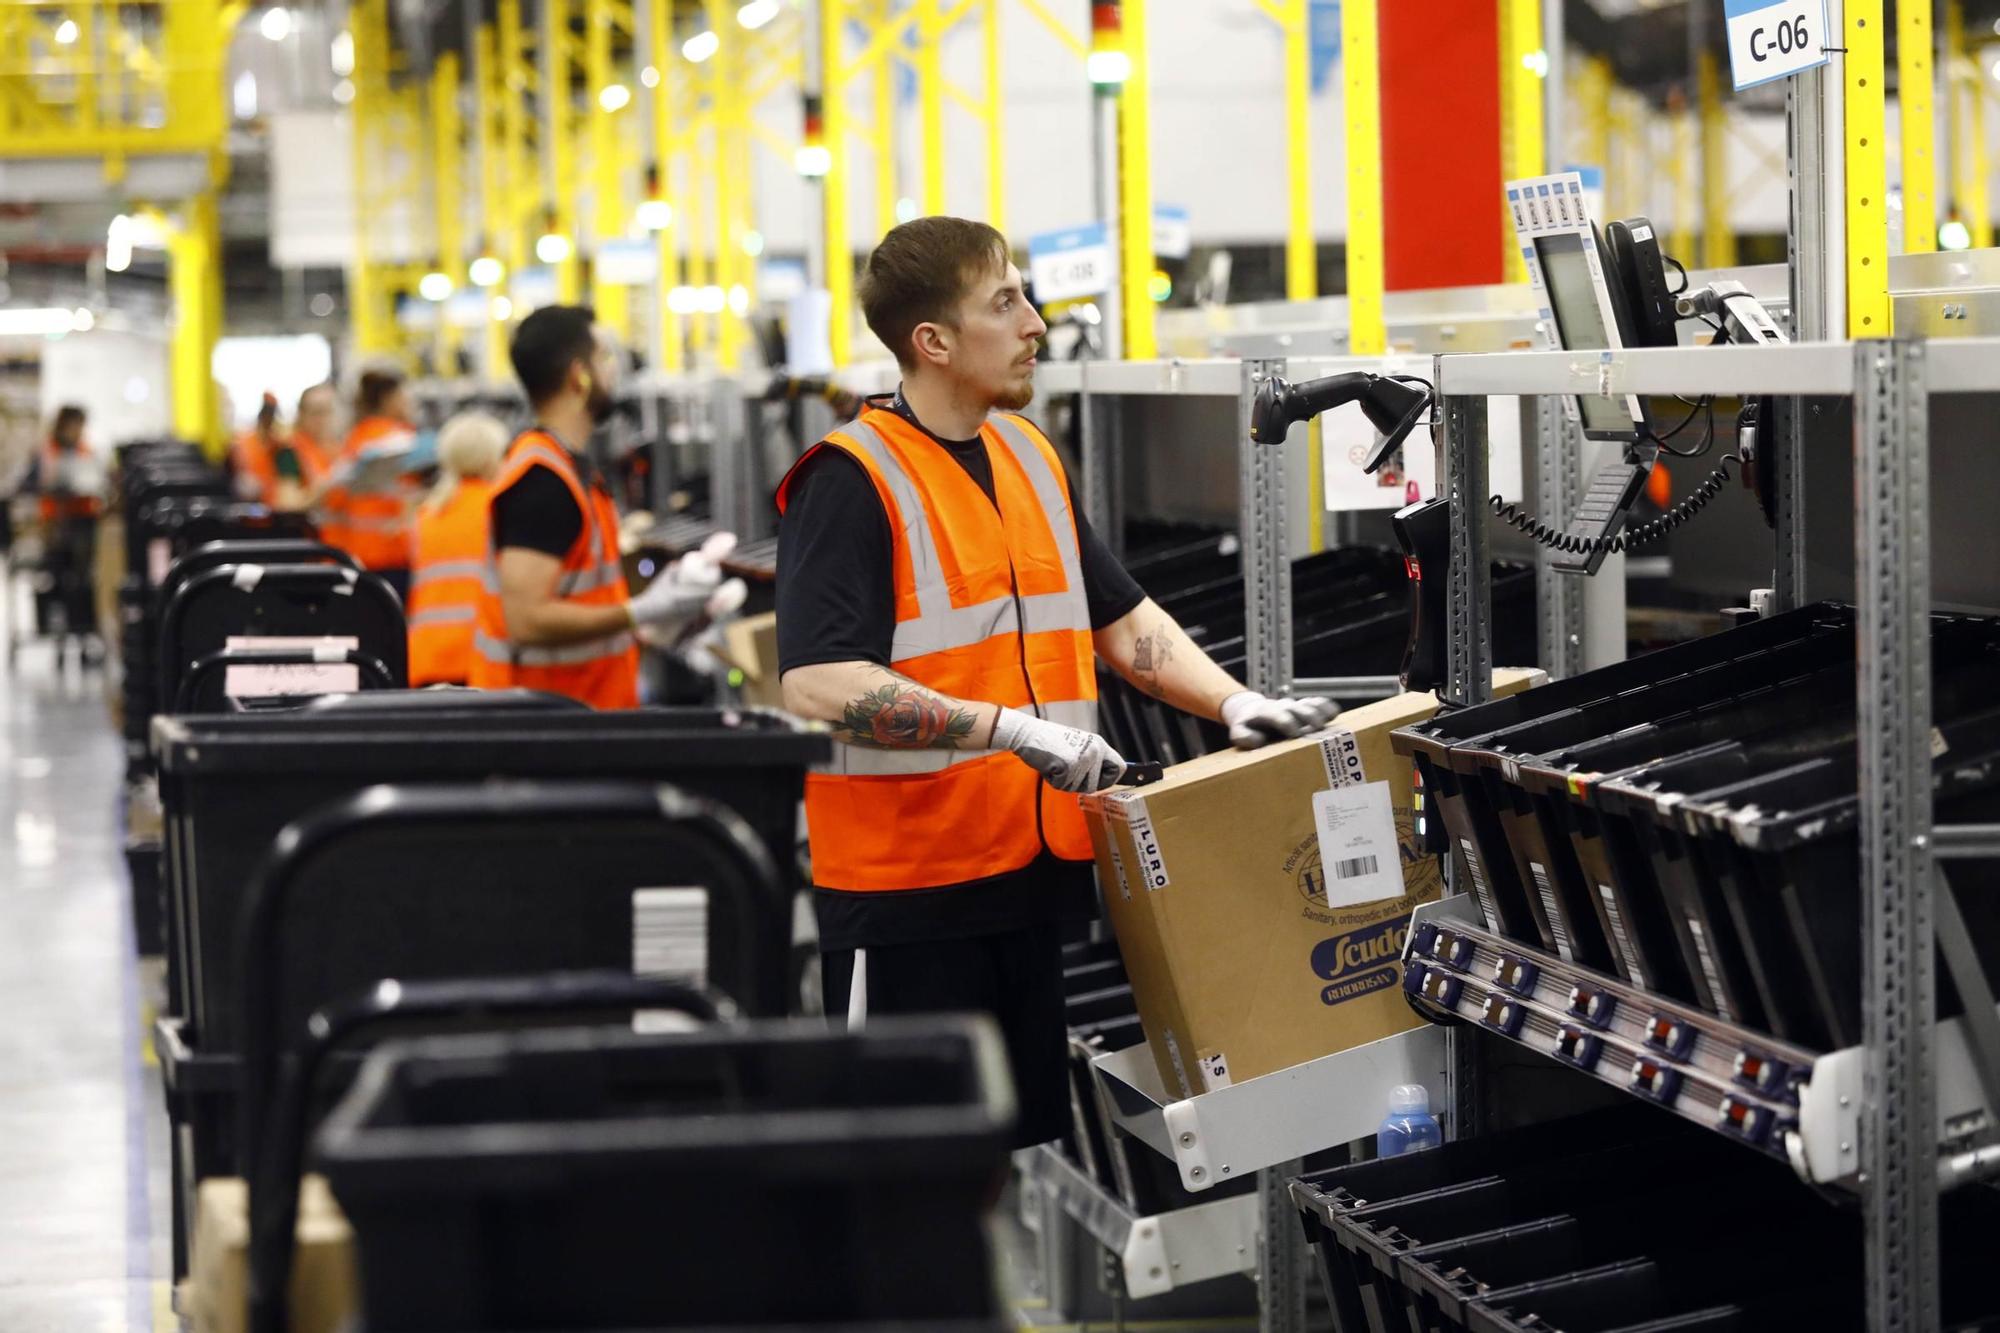 EN IMÁGENES | Así se trabaja en el gran centro de mercancías de Amazon en Zaragoza a las puertas del Black Friday